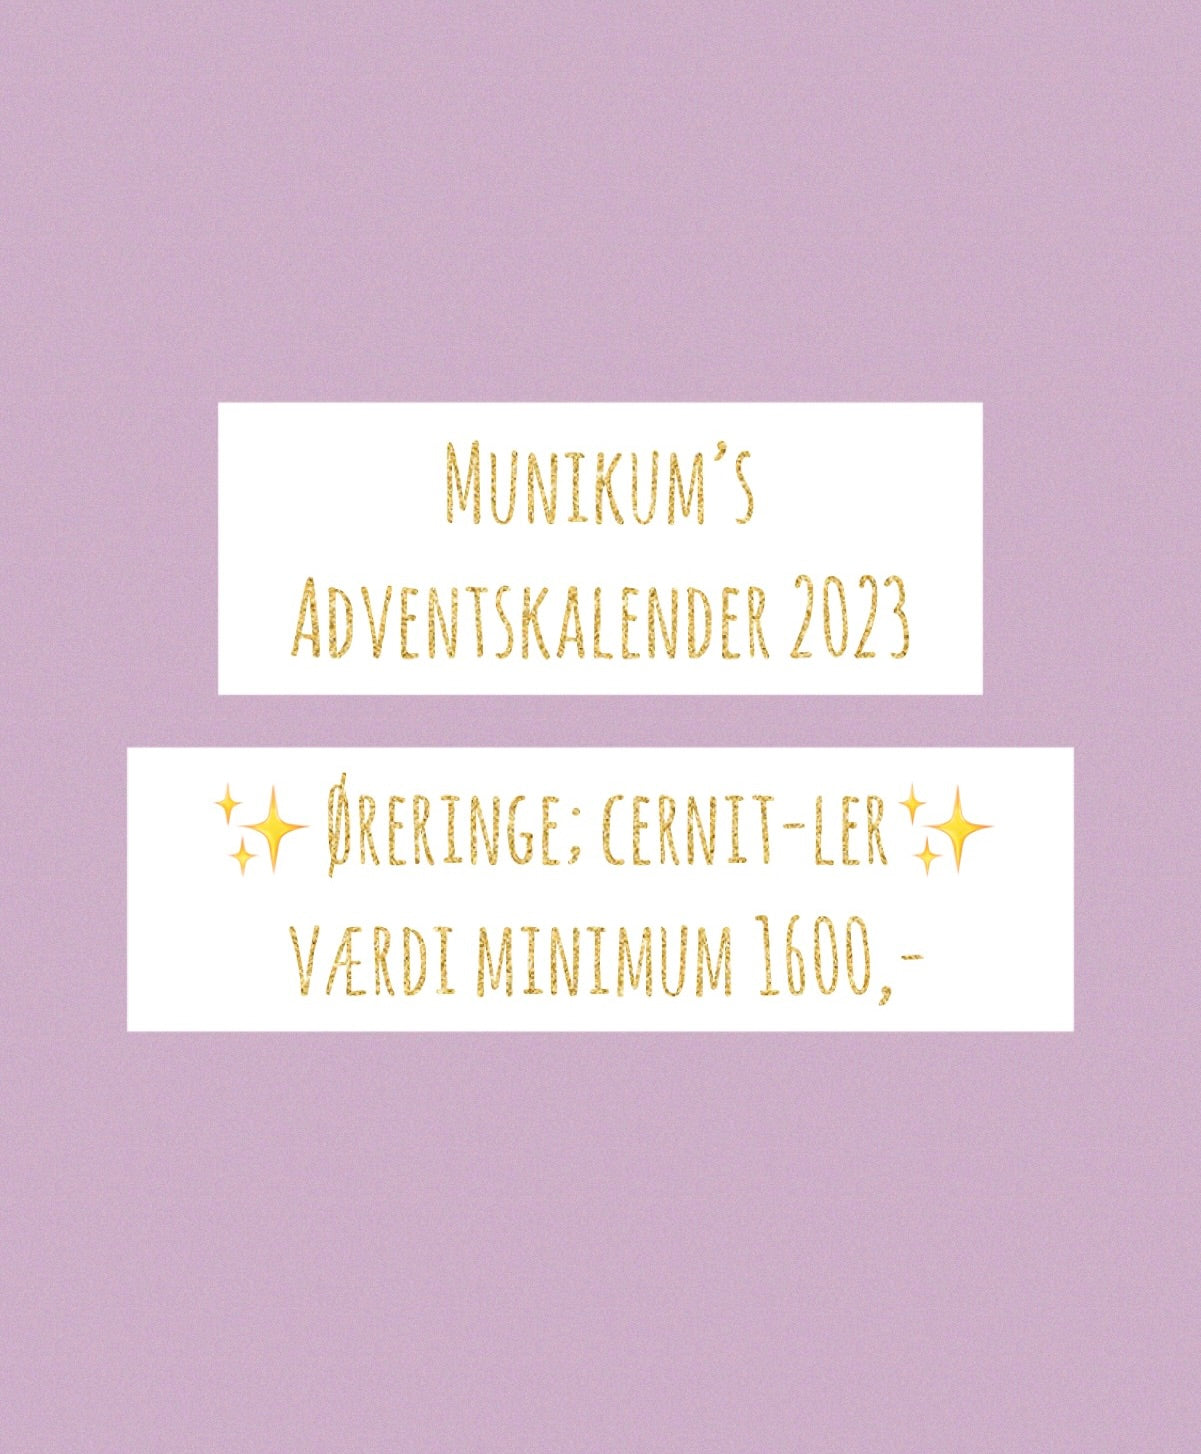 Adventskalender 2023 - Øreringe; cernit-ler